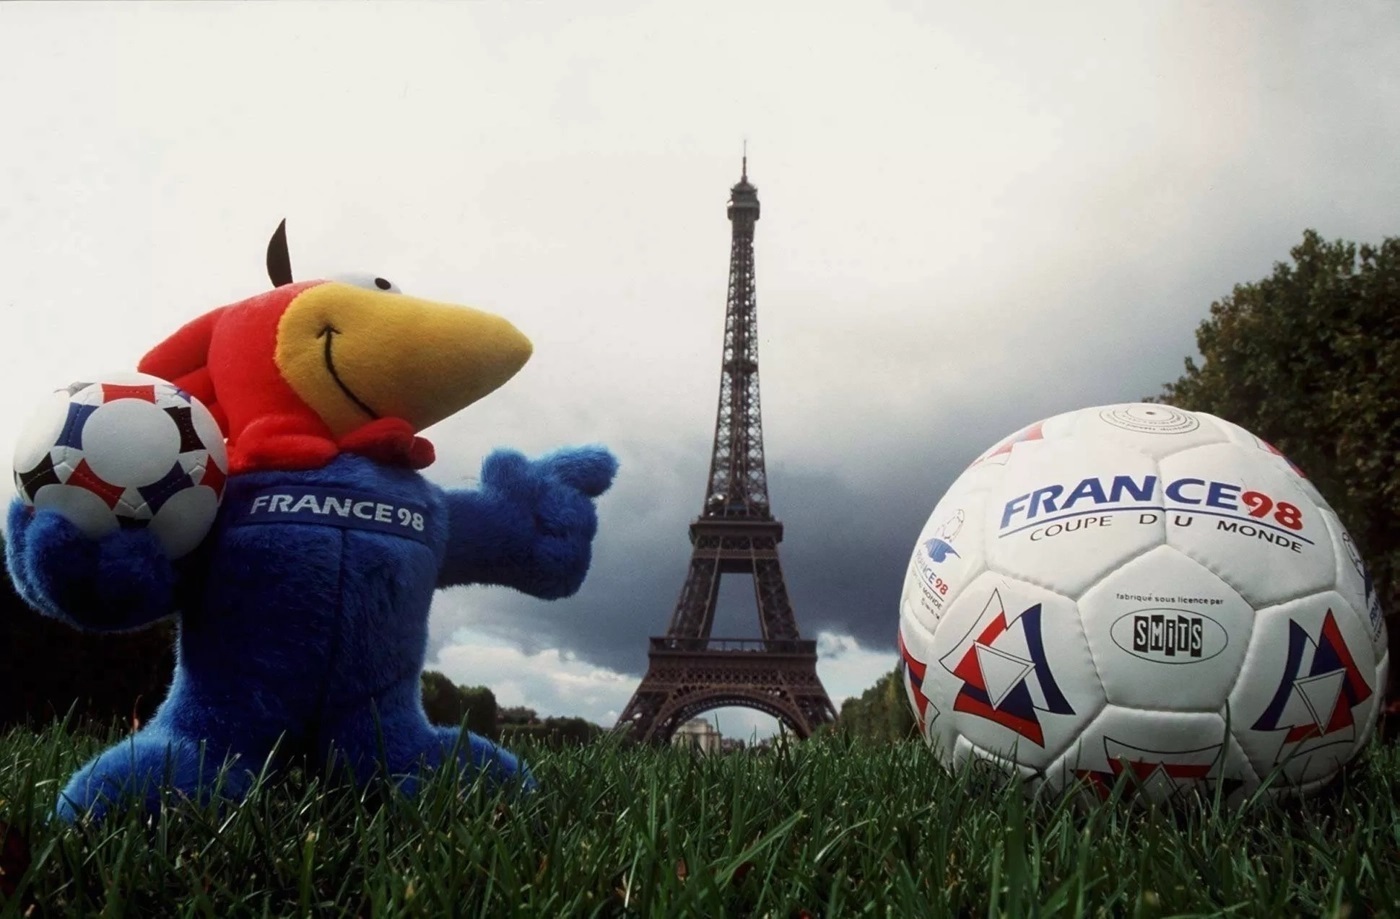 Footix - Mascota de Francia 1998